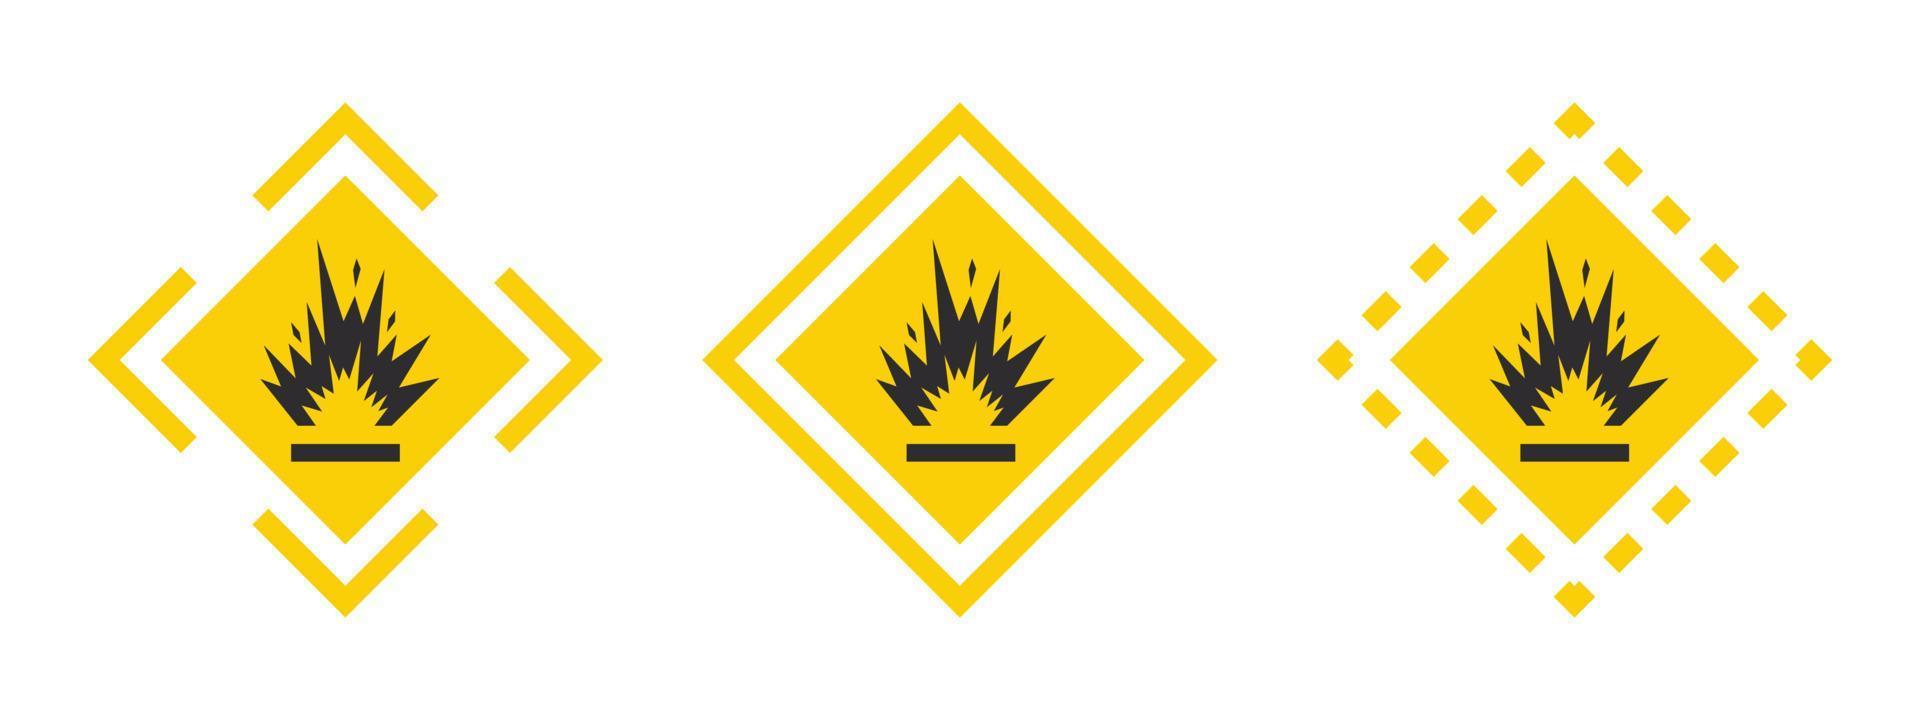 materiales extremadamente explosivos. precaución señal de advertencia explosivos líquidos o materiales. conjunto de iconos de sustancias explosivas. iconos vectoriales vector